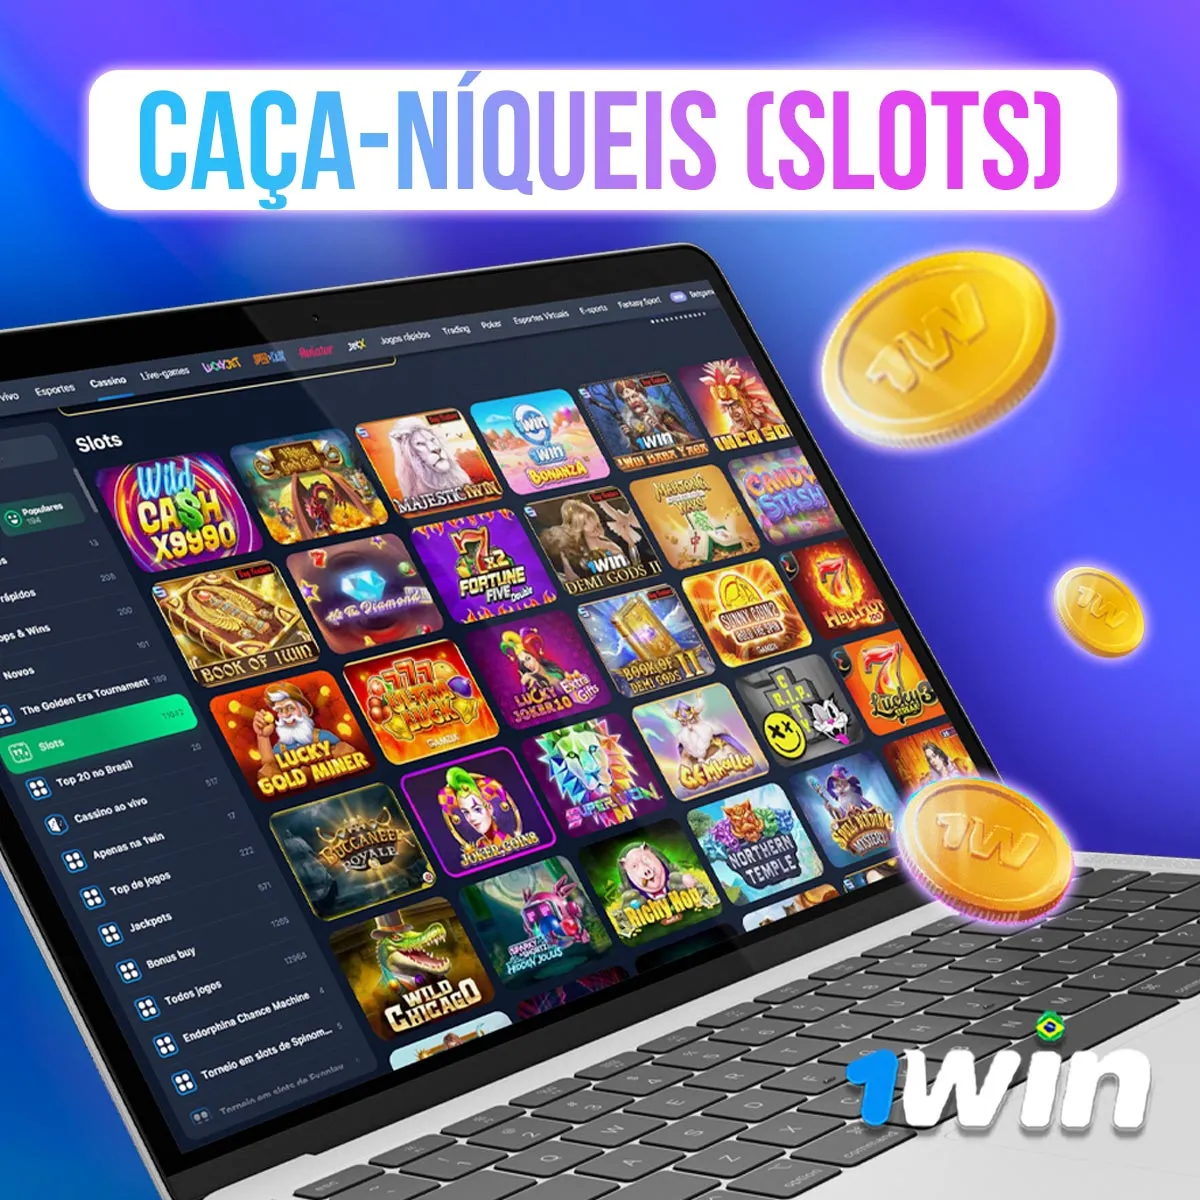 Caça-Níqueis (Slots) no cassino da casa de apostas 1win no mercado brasileiro